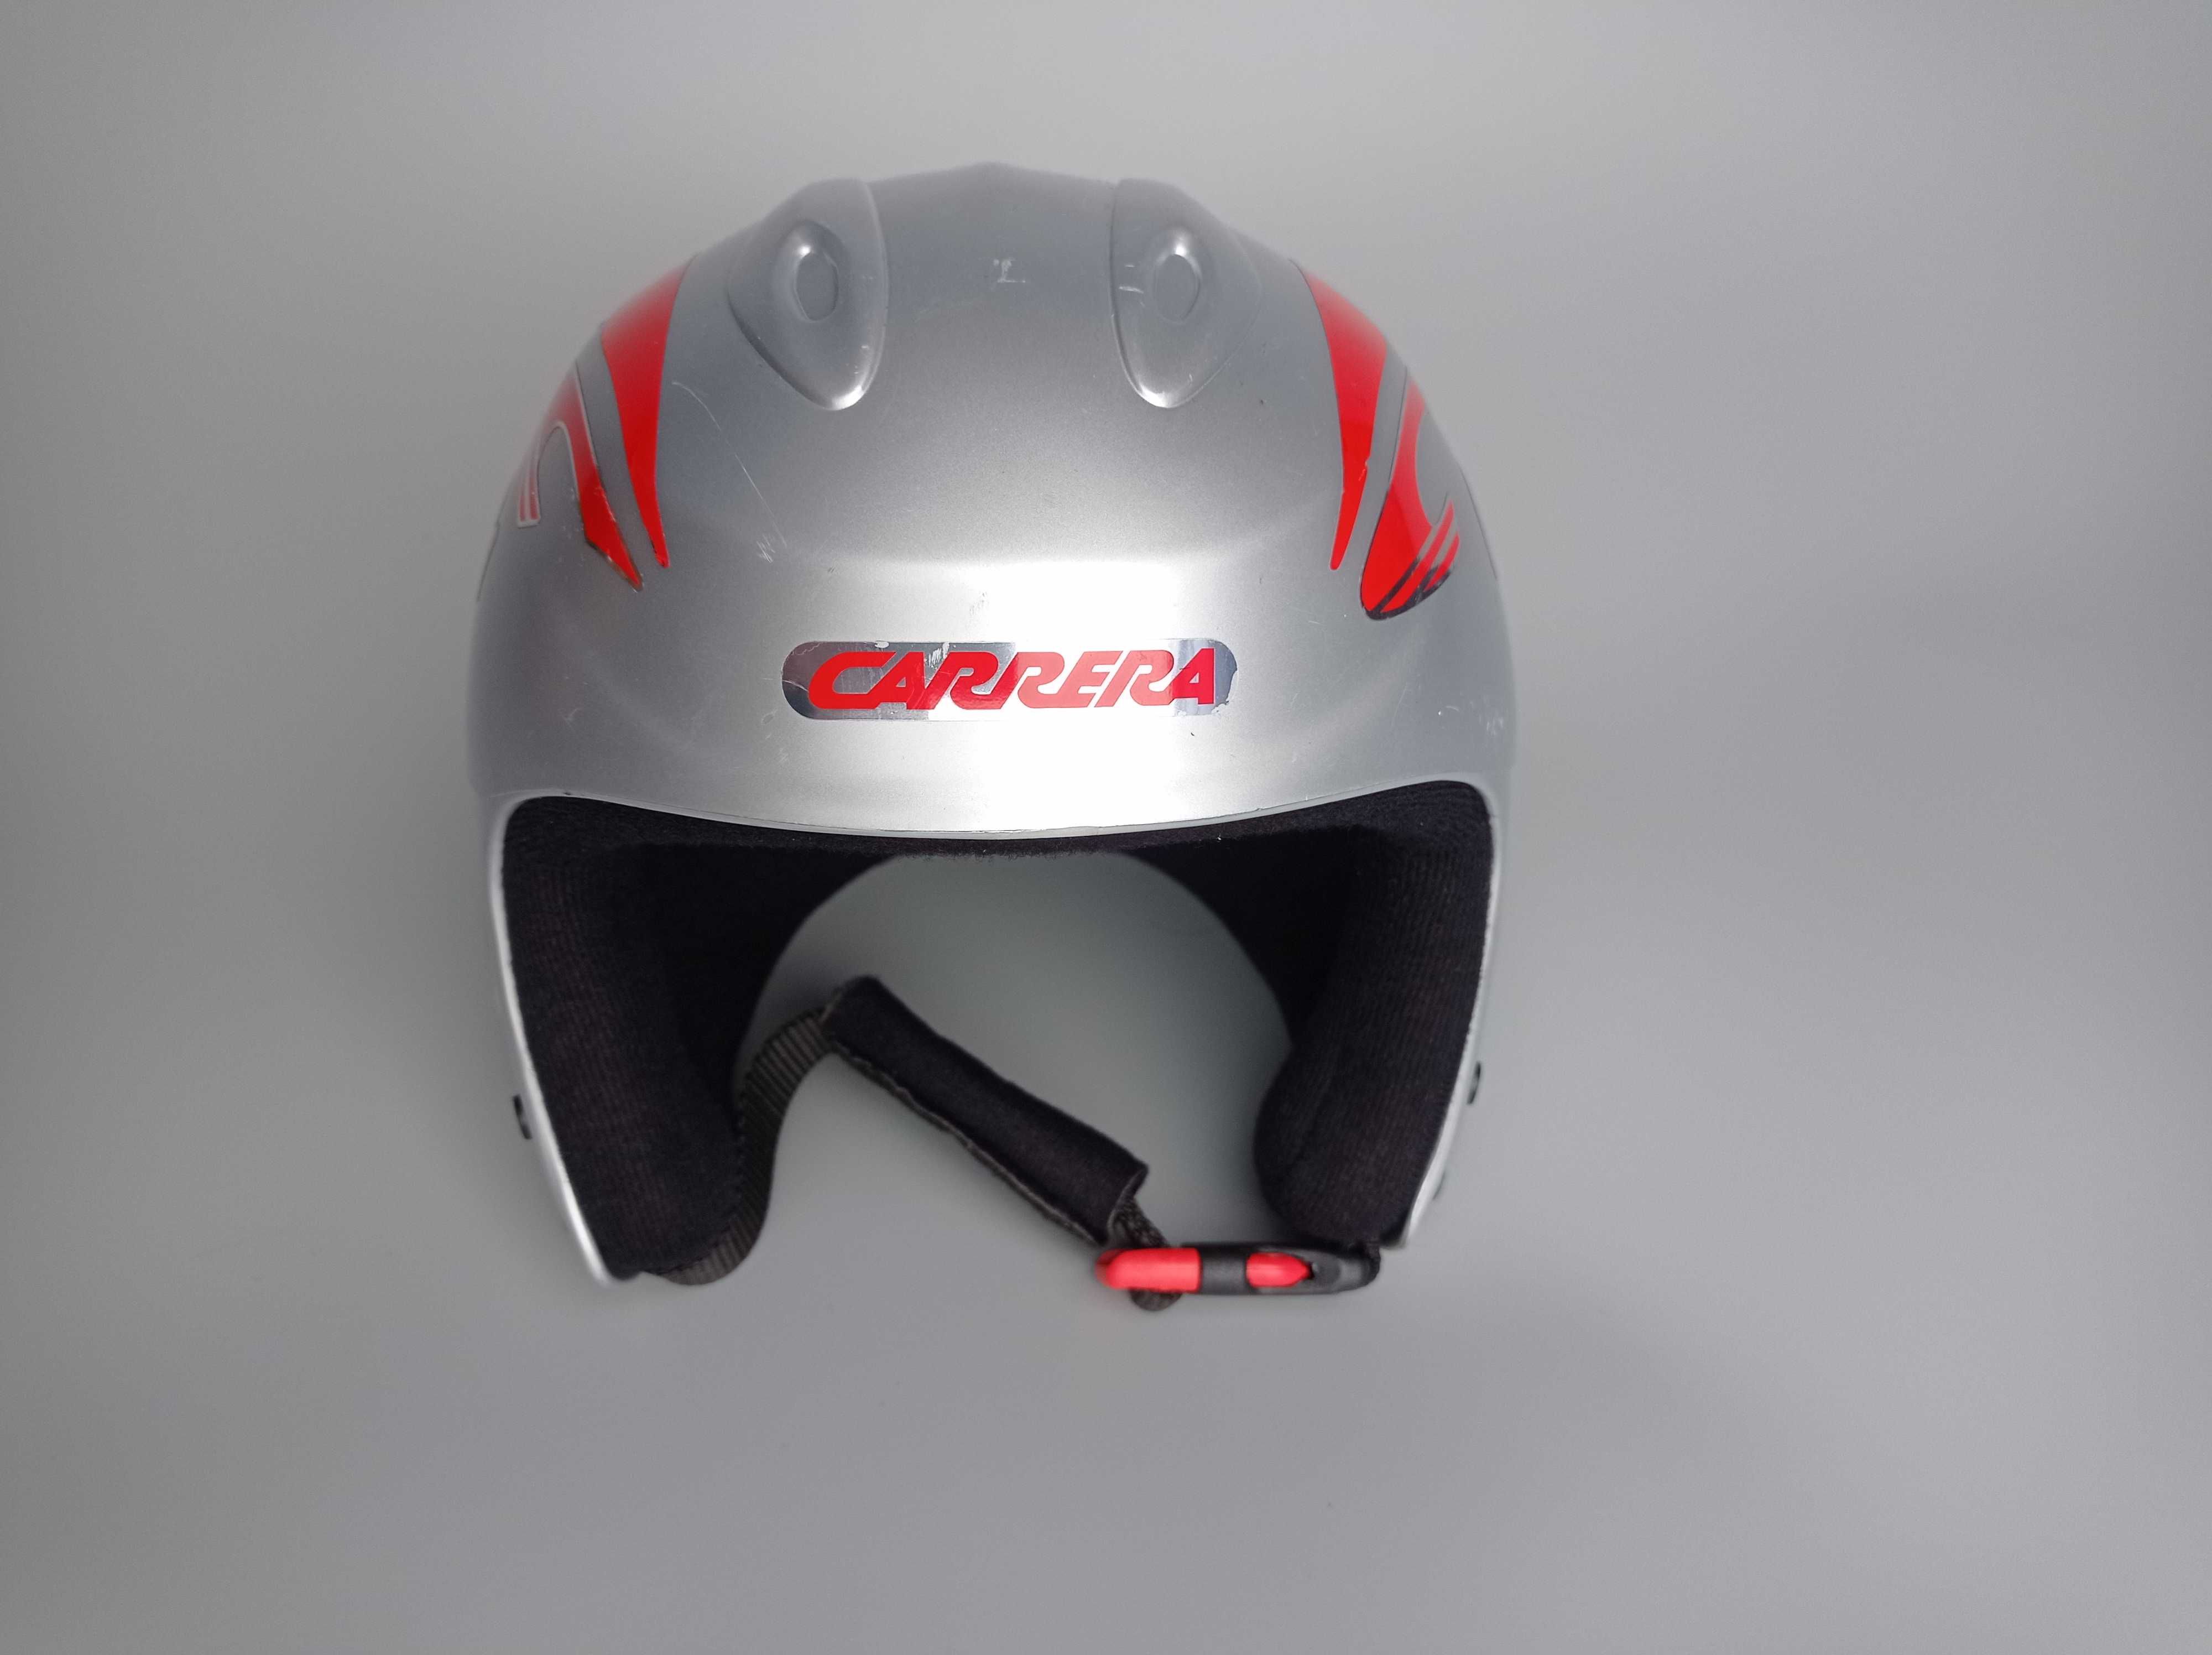 Горнолыжный детский шлем Carrera, размер XS 53/54см, Италия.